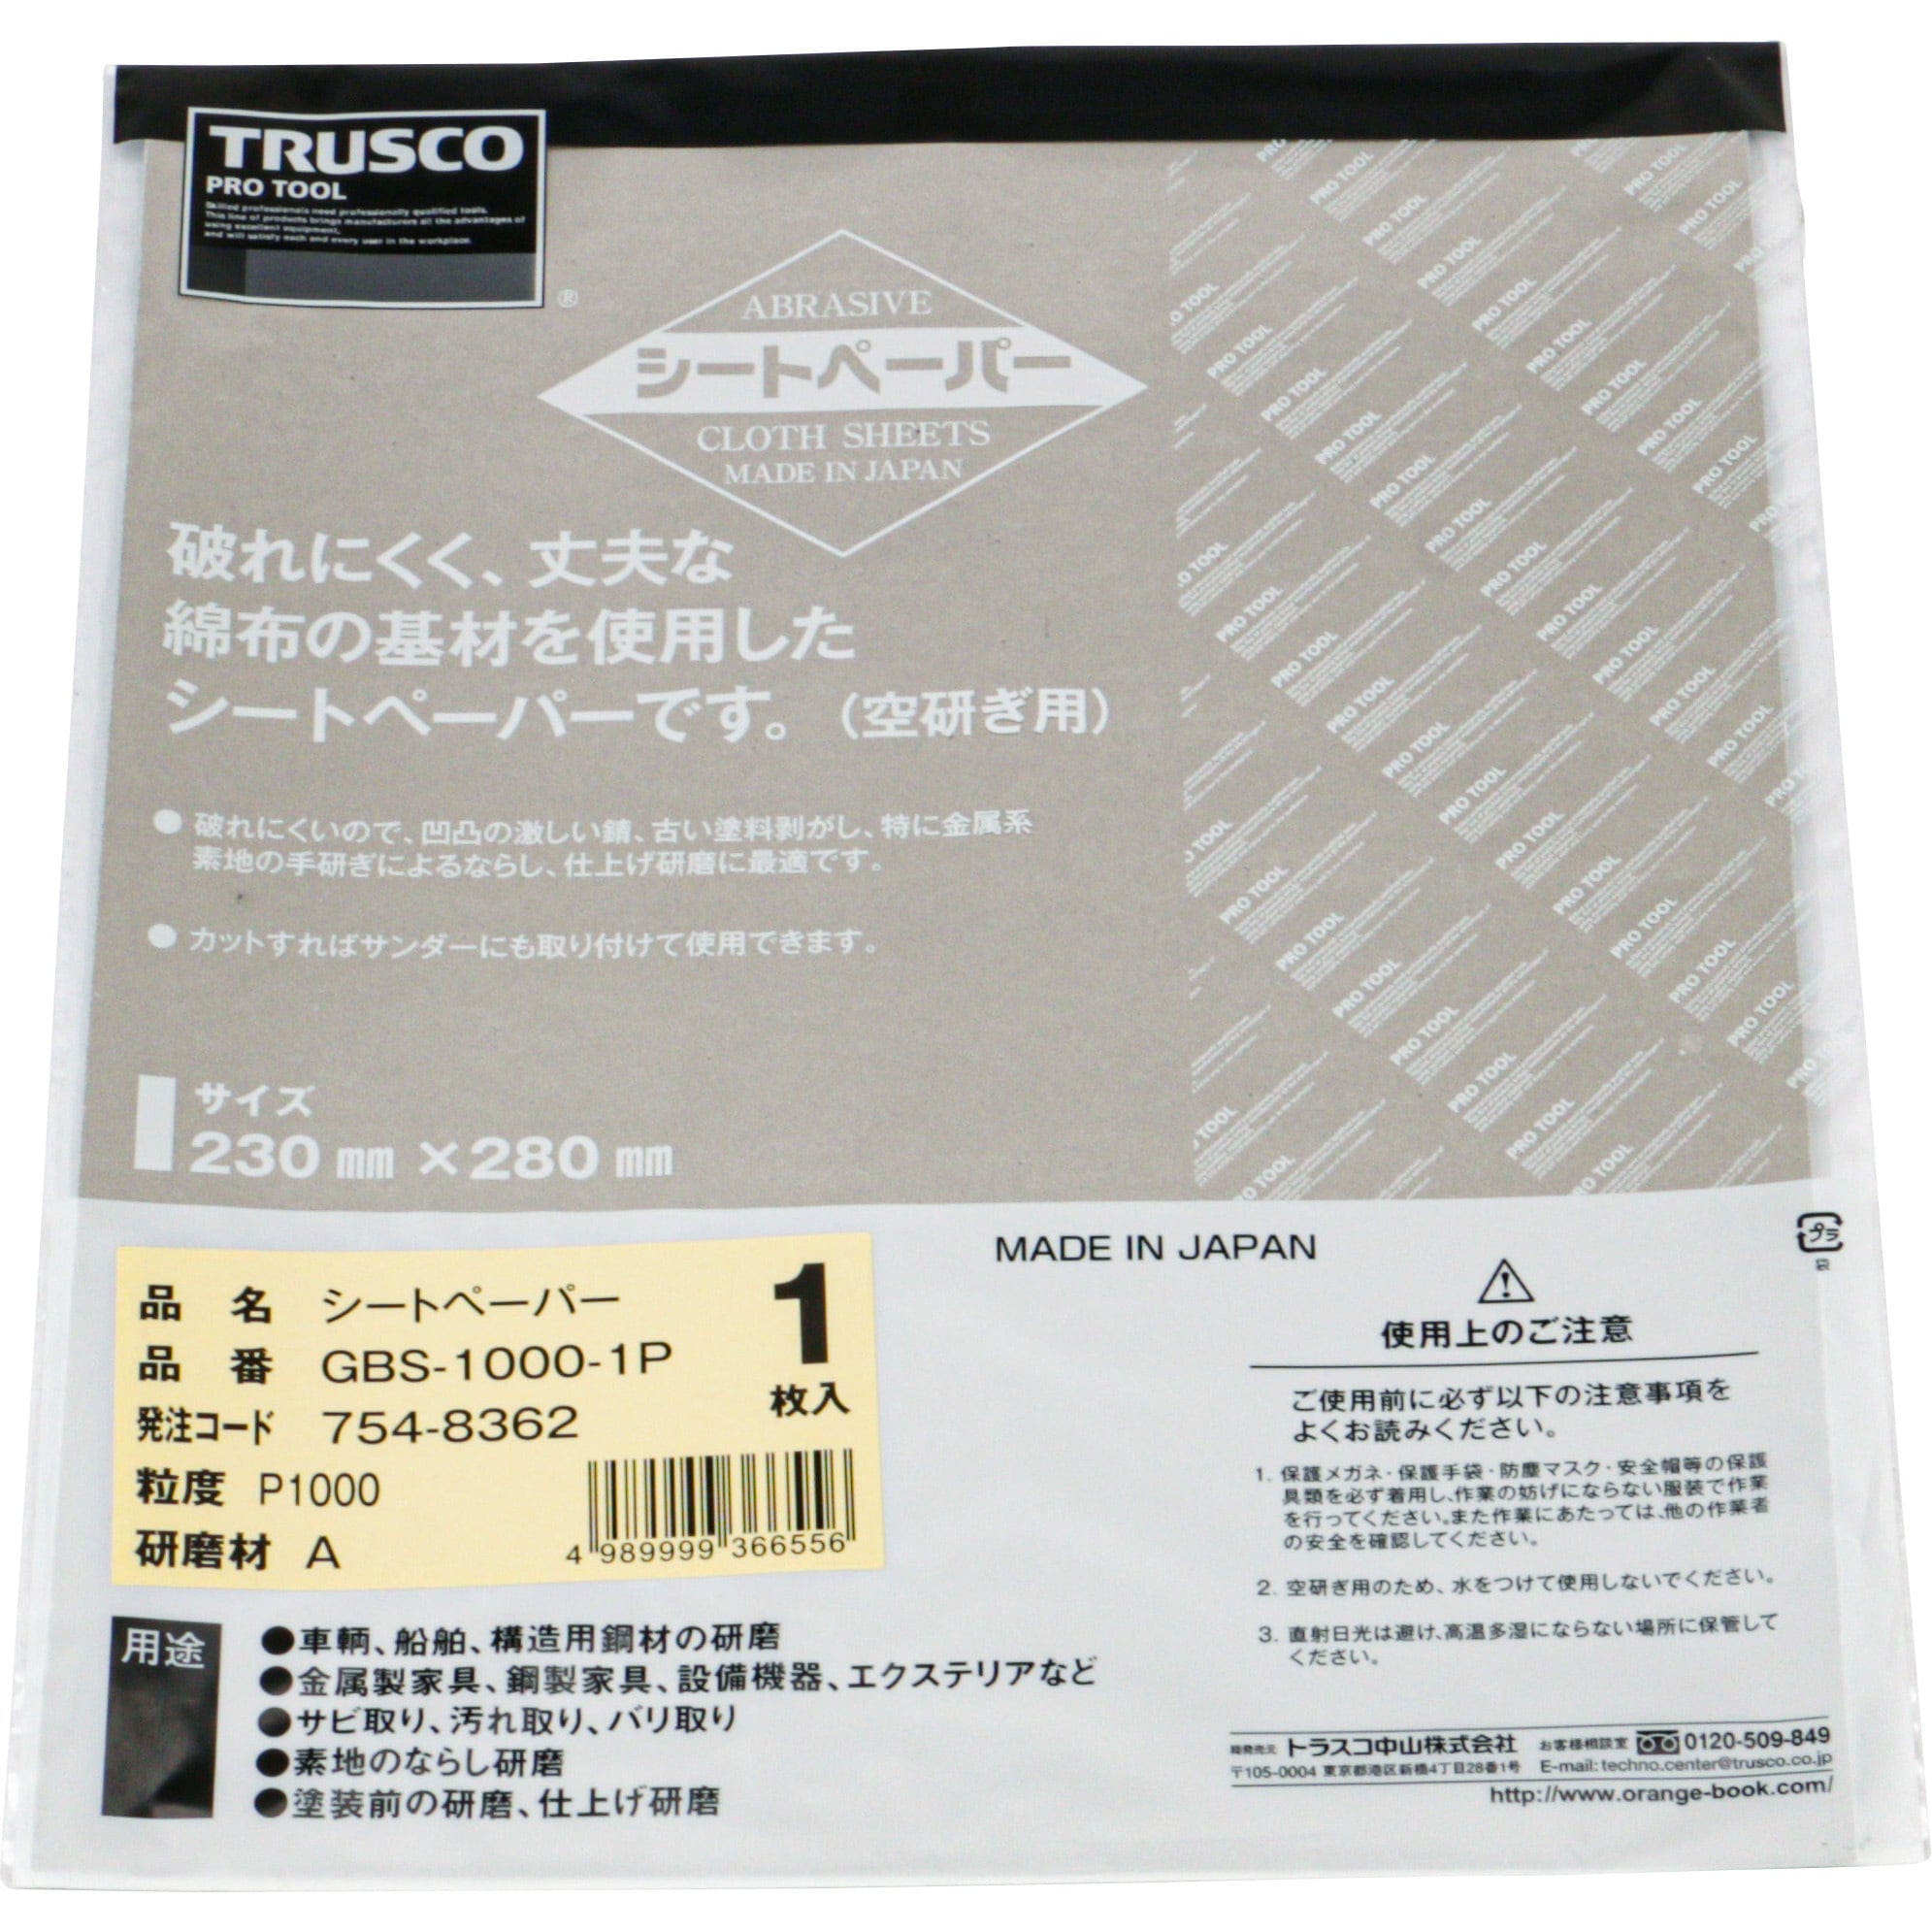 GBS-1000-1P シートペーパー(布やすり) 1枚 TRUSCO 【通販サイトMonotaRO】